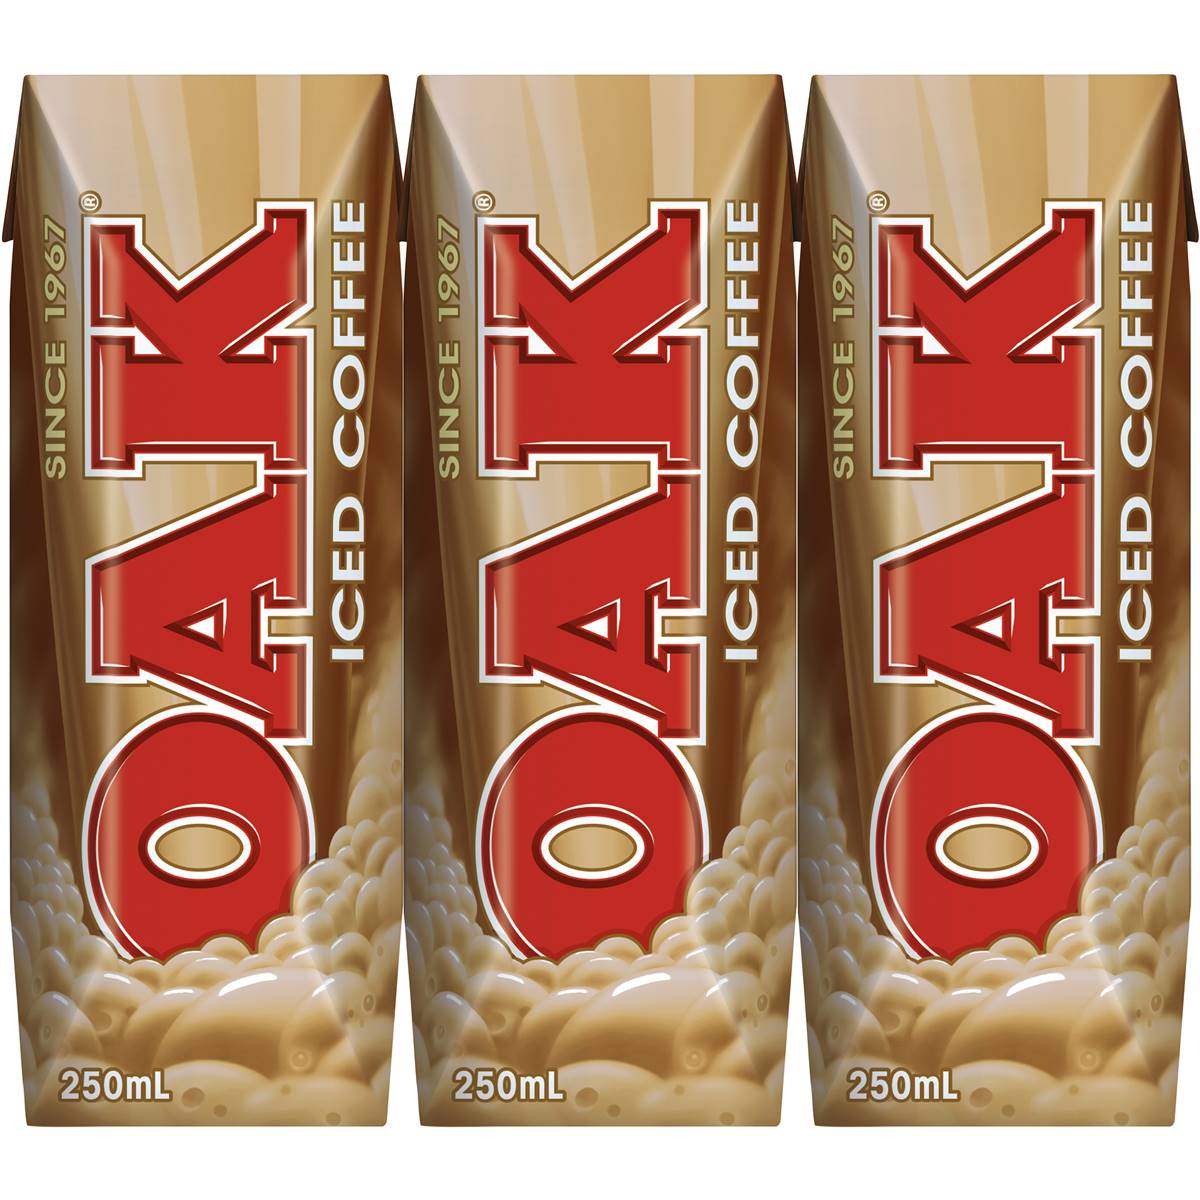 Oak Milk Ice Coffee 250ml 3pk